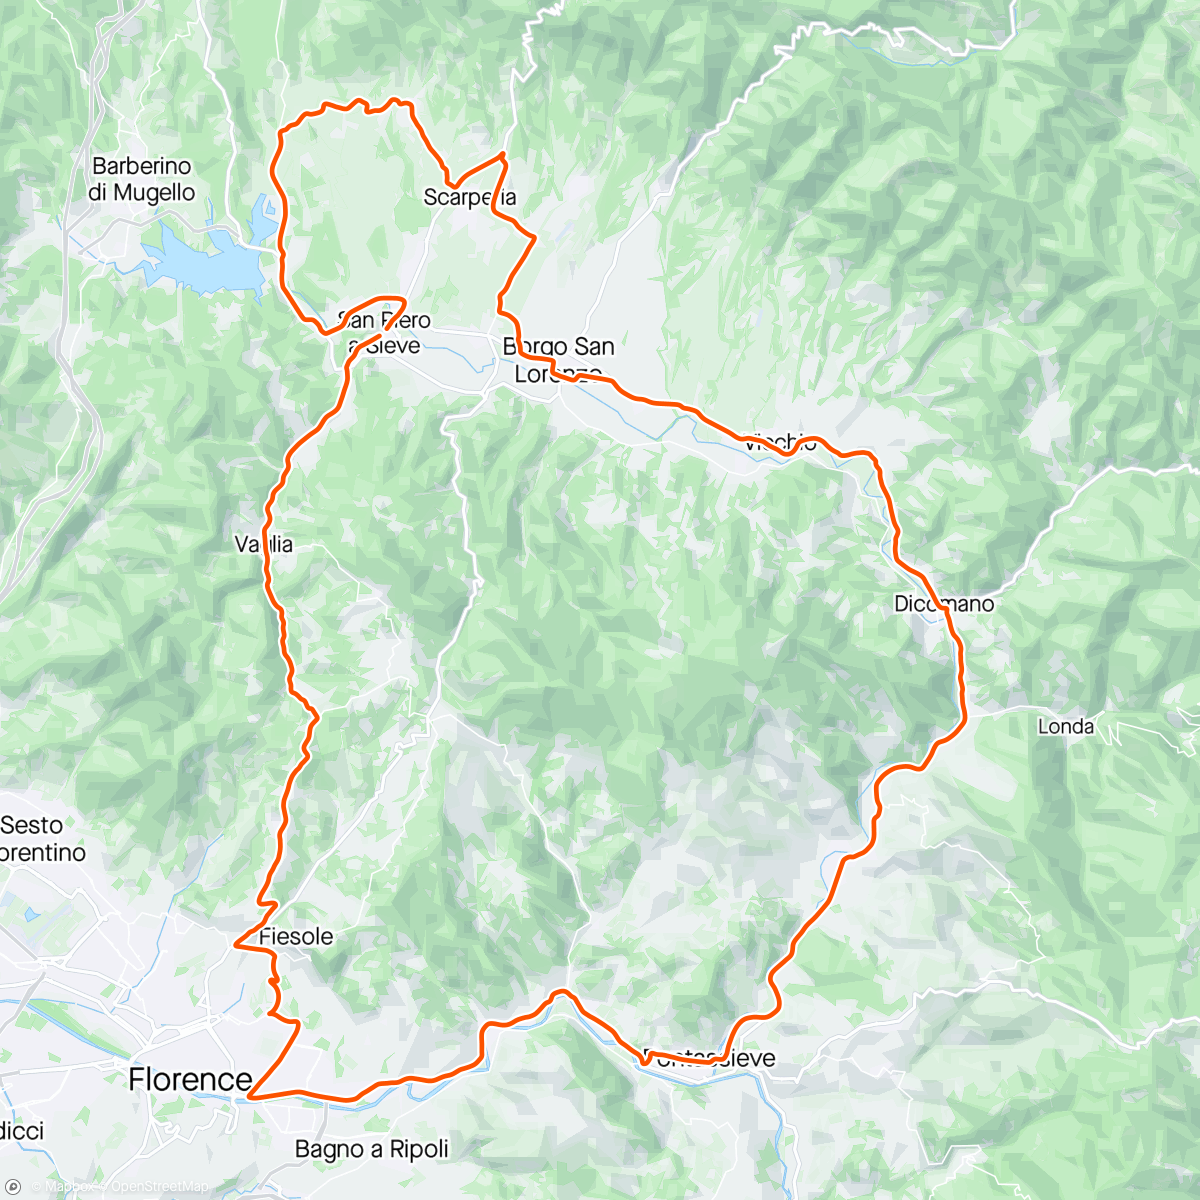 Map of the activity, Pratolino / Fiesole / Pontassieve /Dicomano / Scarperia / Sant'Agata / Galliano